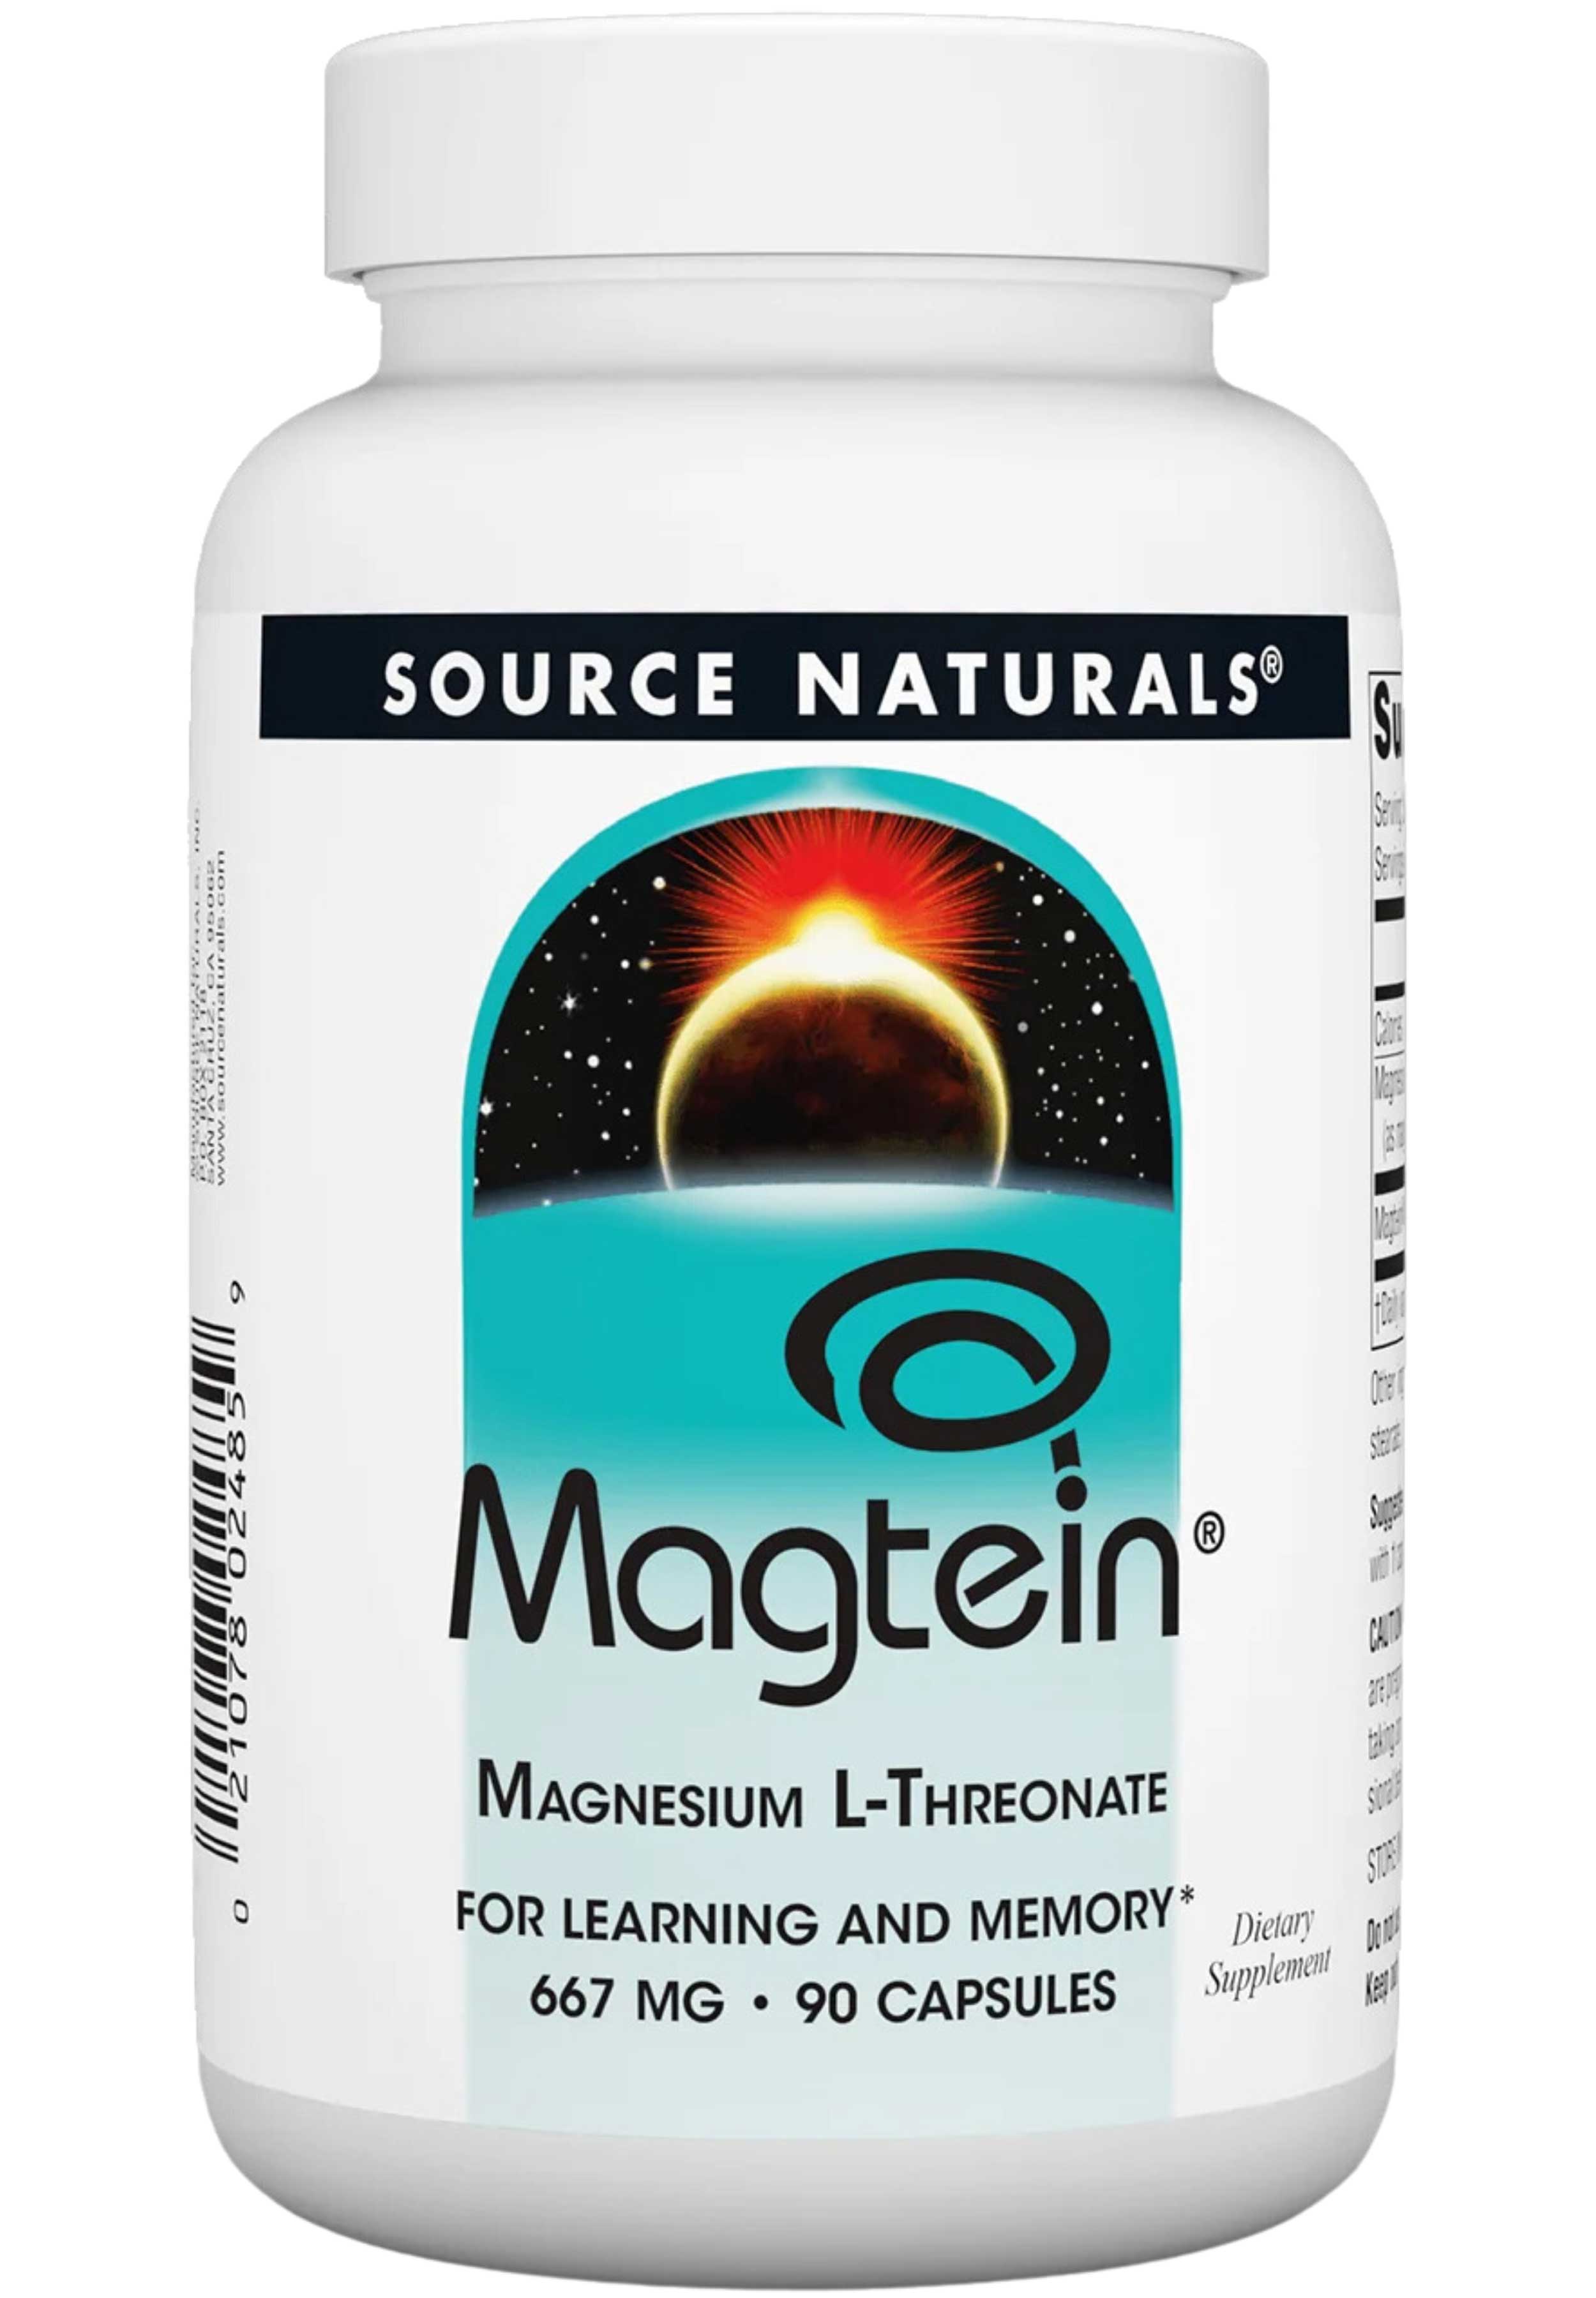 Source Naturals Magtein